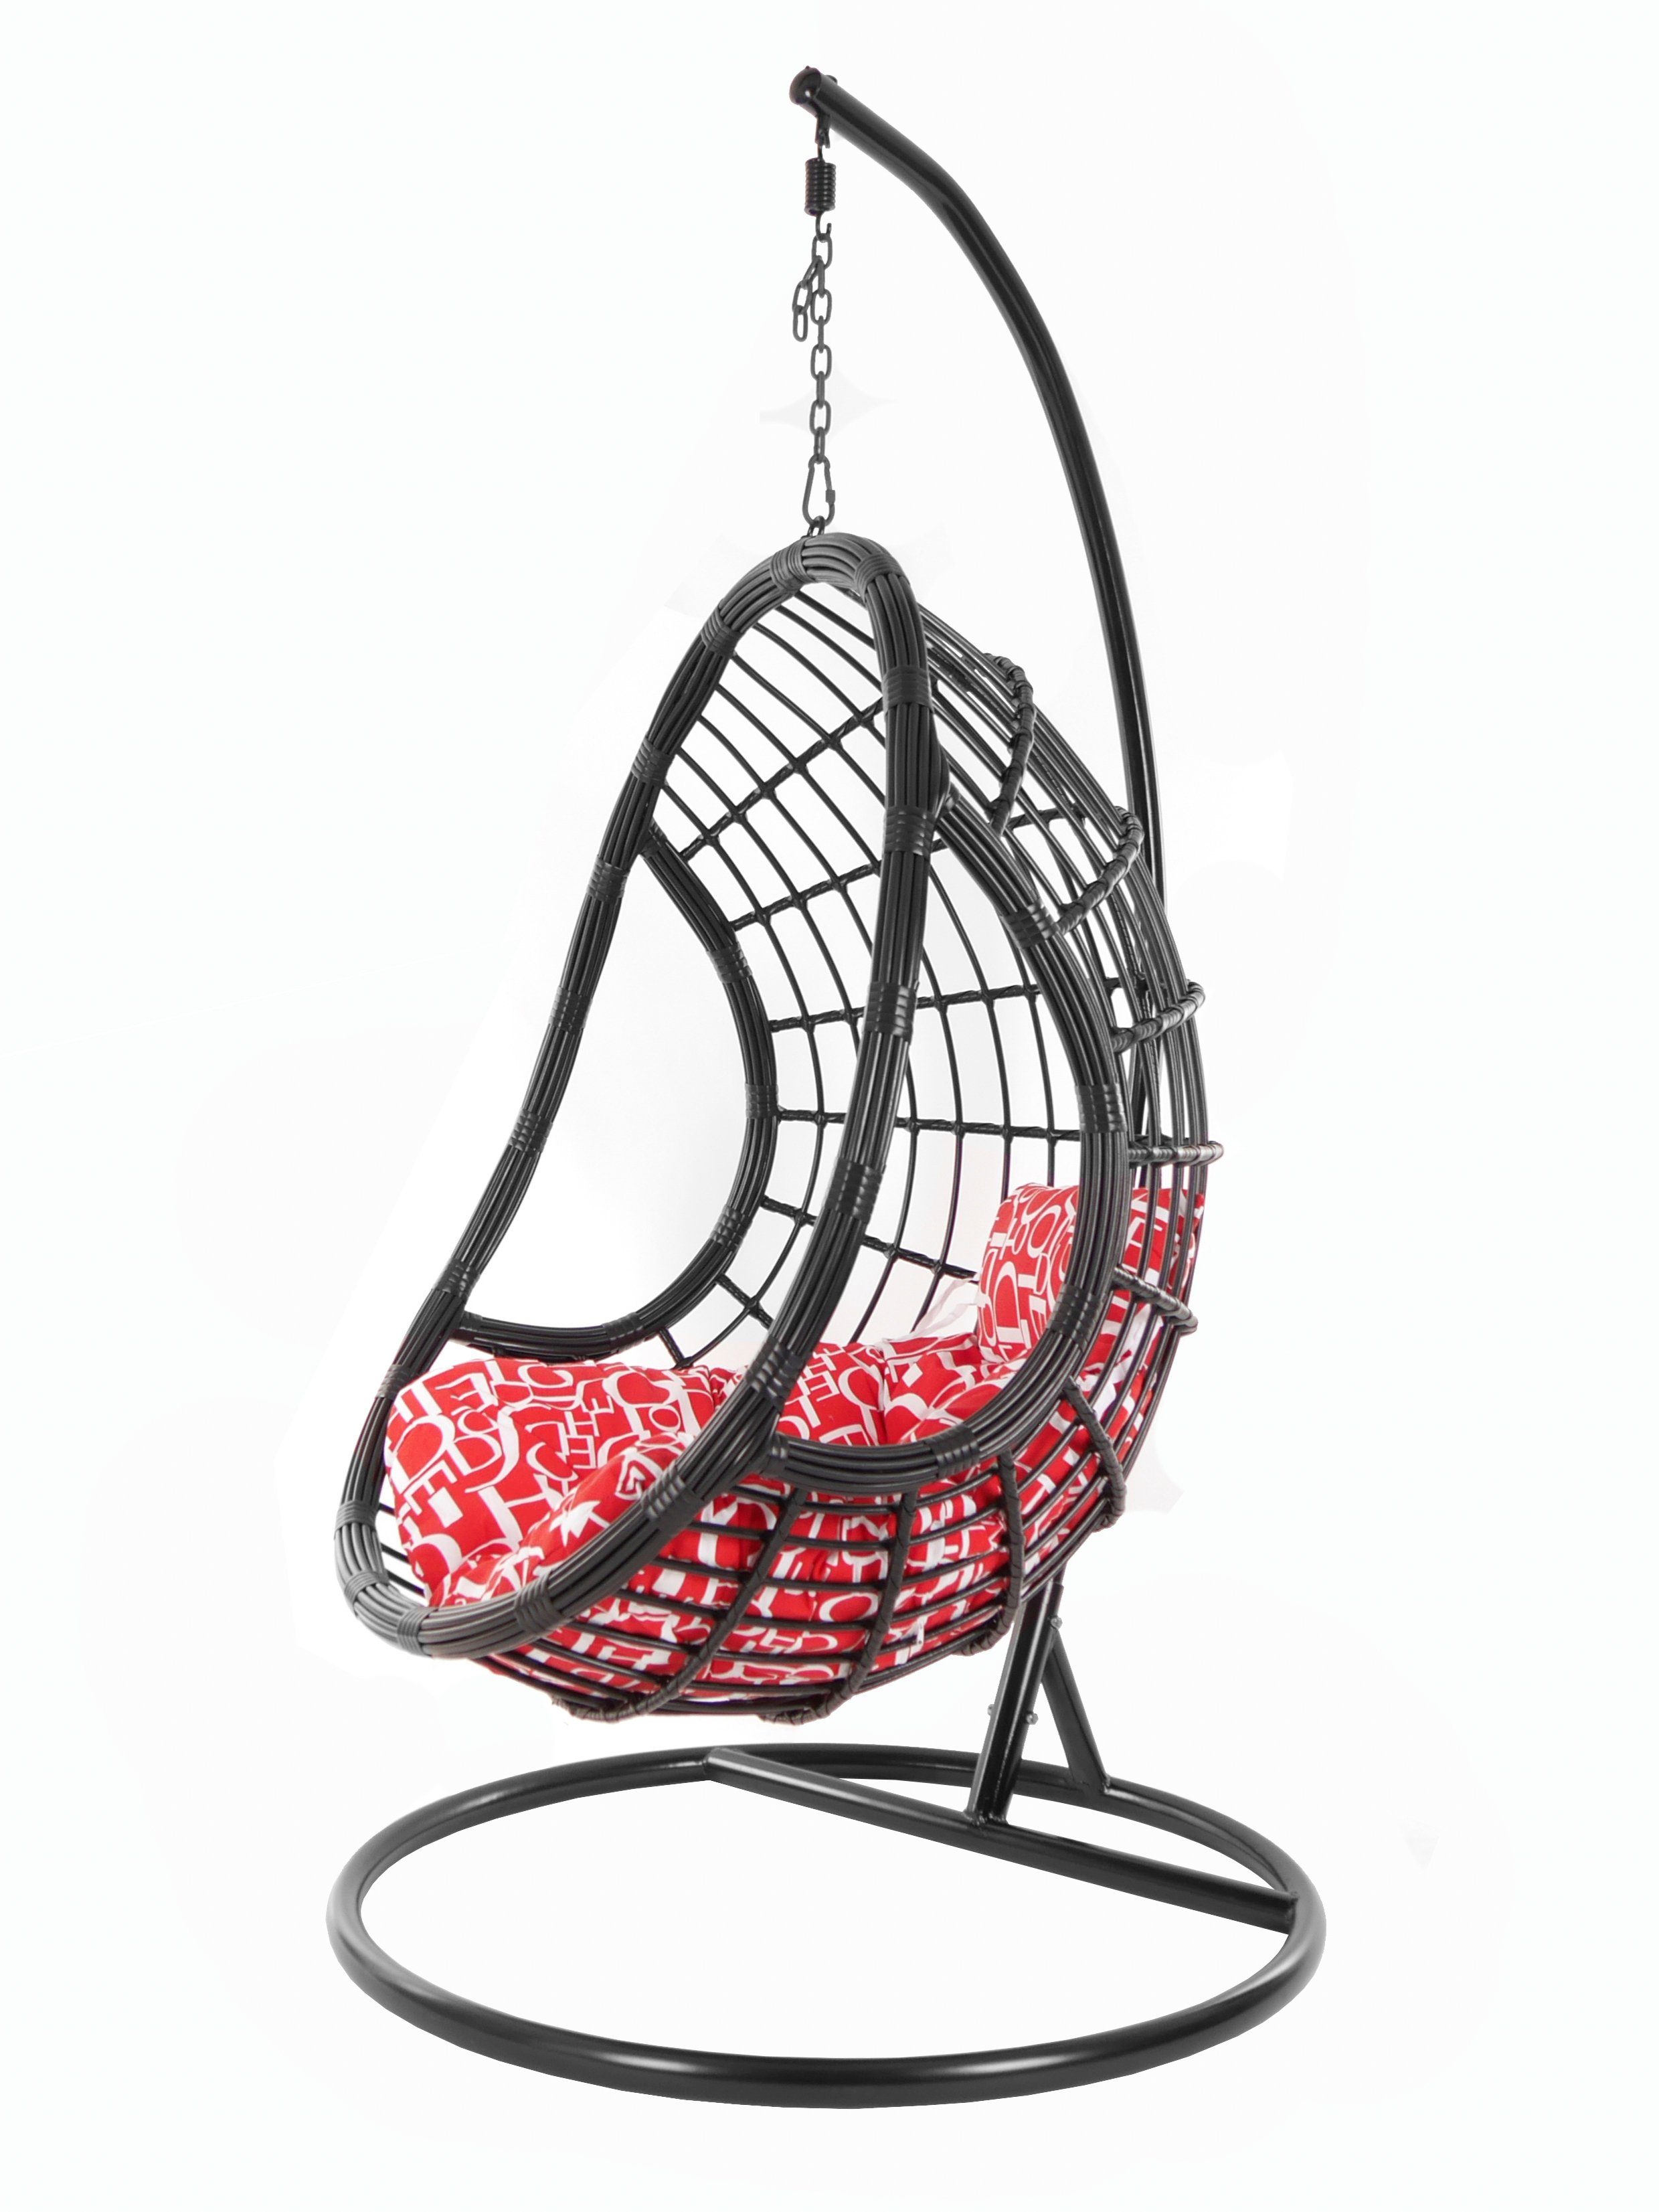 KIDEO Hängesessel PALMANOVA Gestell Swing schwarz, edles Loungemöbel, Kissen, black, letter) Hängesessel Chair, red Schwebesessel, (3100 und mit buchstabenmuster Design